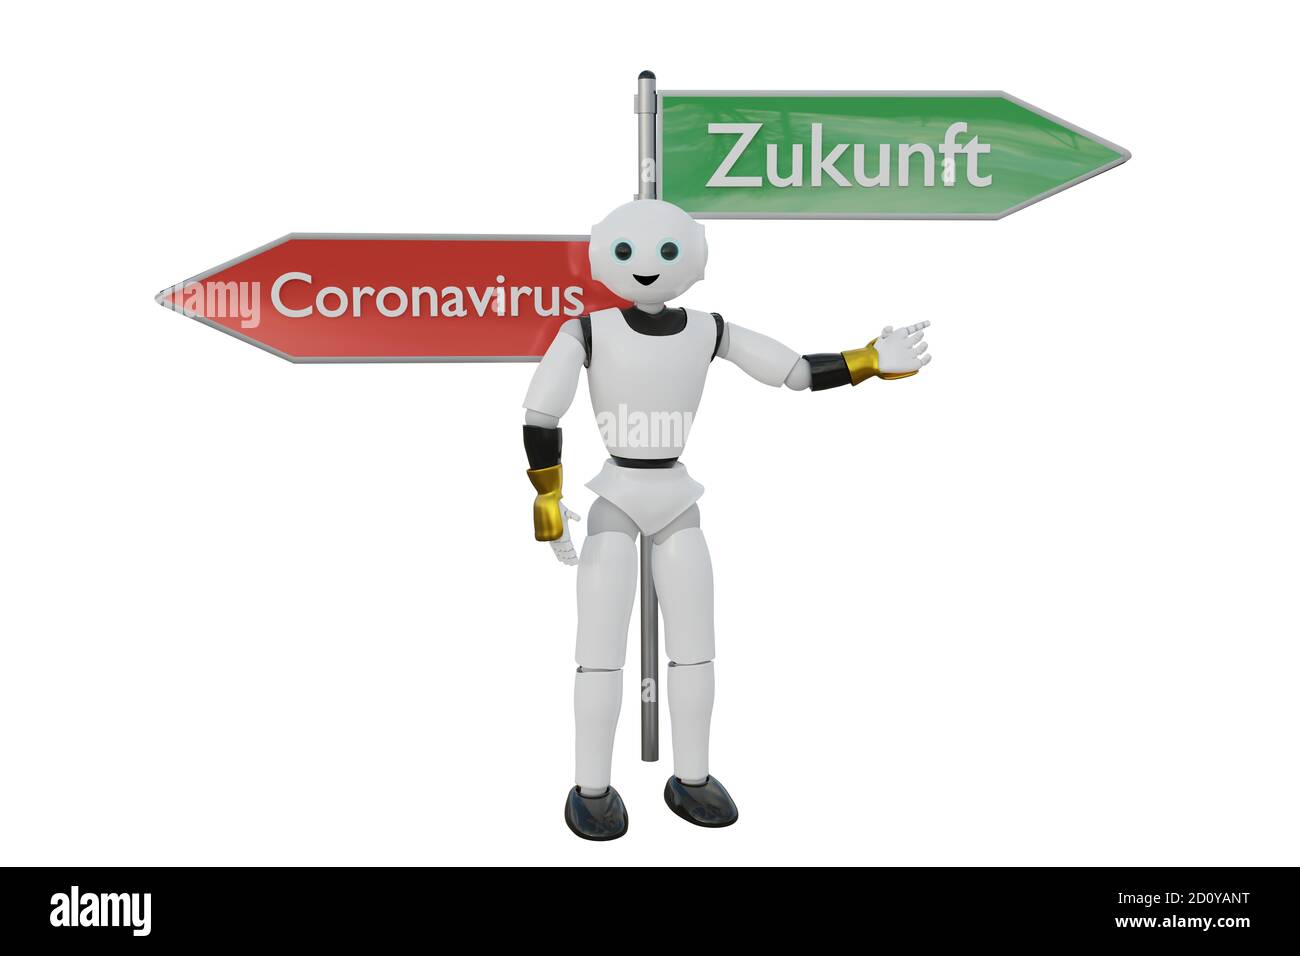 Le robot 3d est à l'affiche du coronavirus et du futur en allemand. Il prend une décision sur l'avenir en pointant du doigt. Rendu 3D Banque D'Images